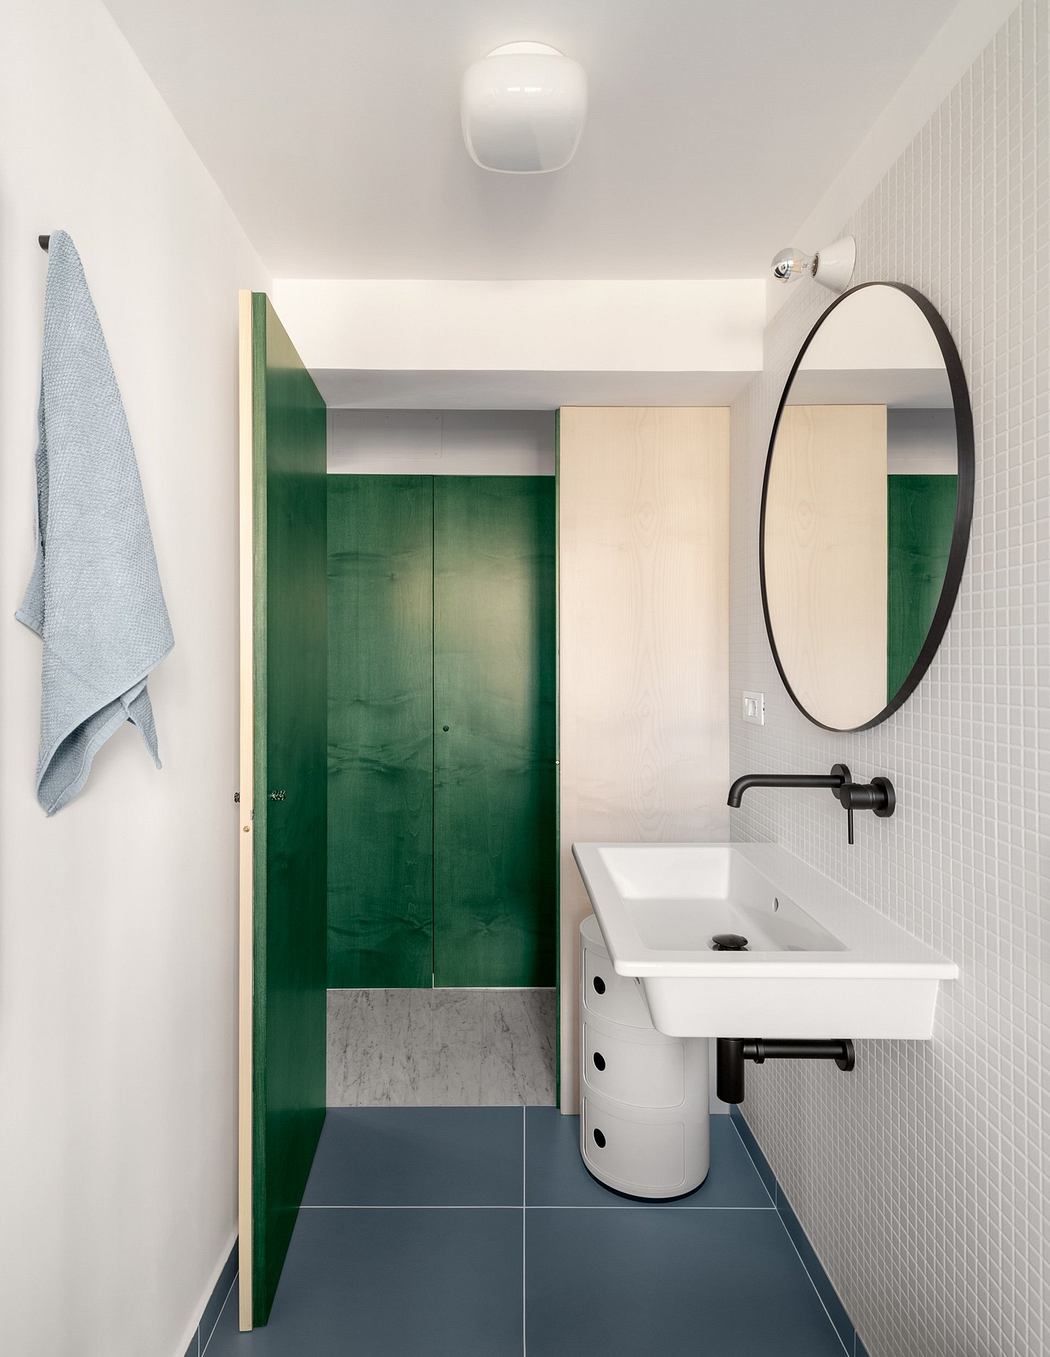 Sleek bathroom with green door, oval mirror, and blue floor tiles.